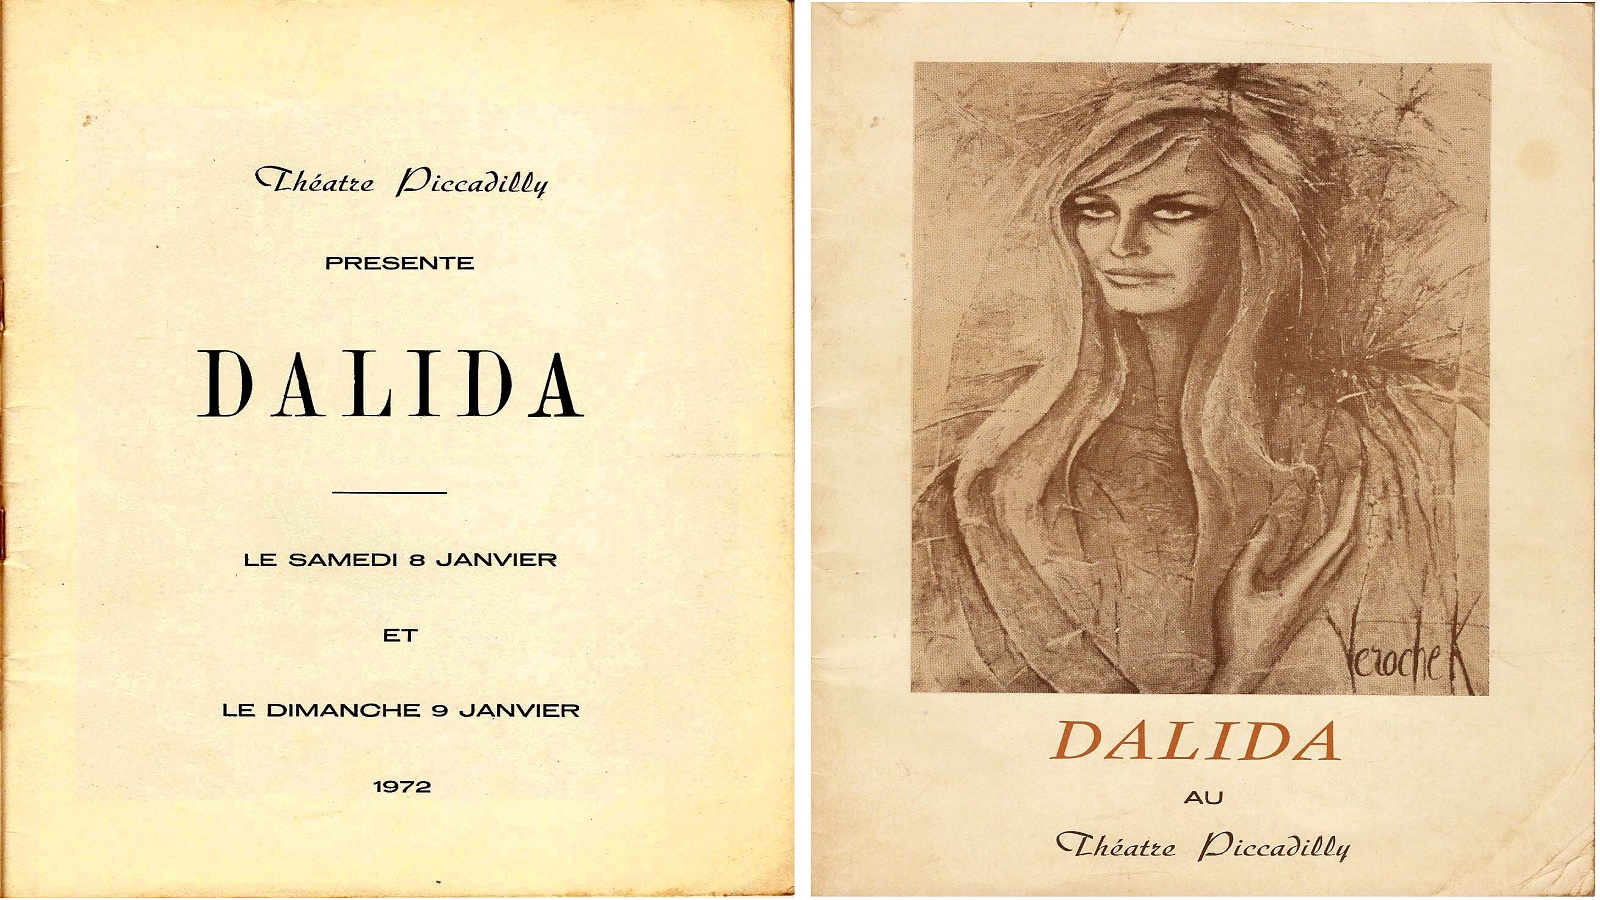  داليدا في أول إطلالة لها على مسرح البيكاديللي، كانون الثاني-يناير 1972